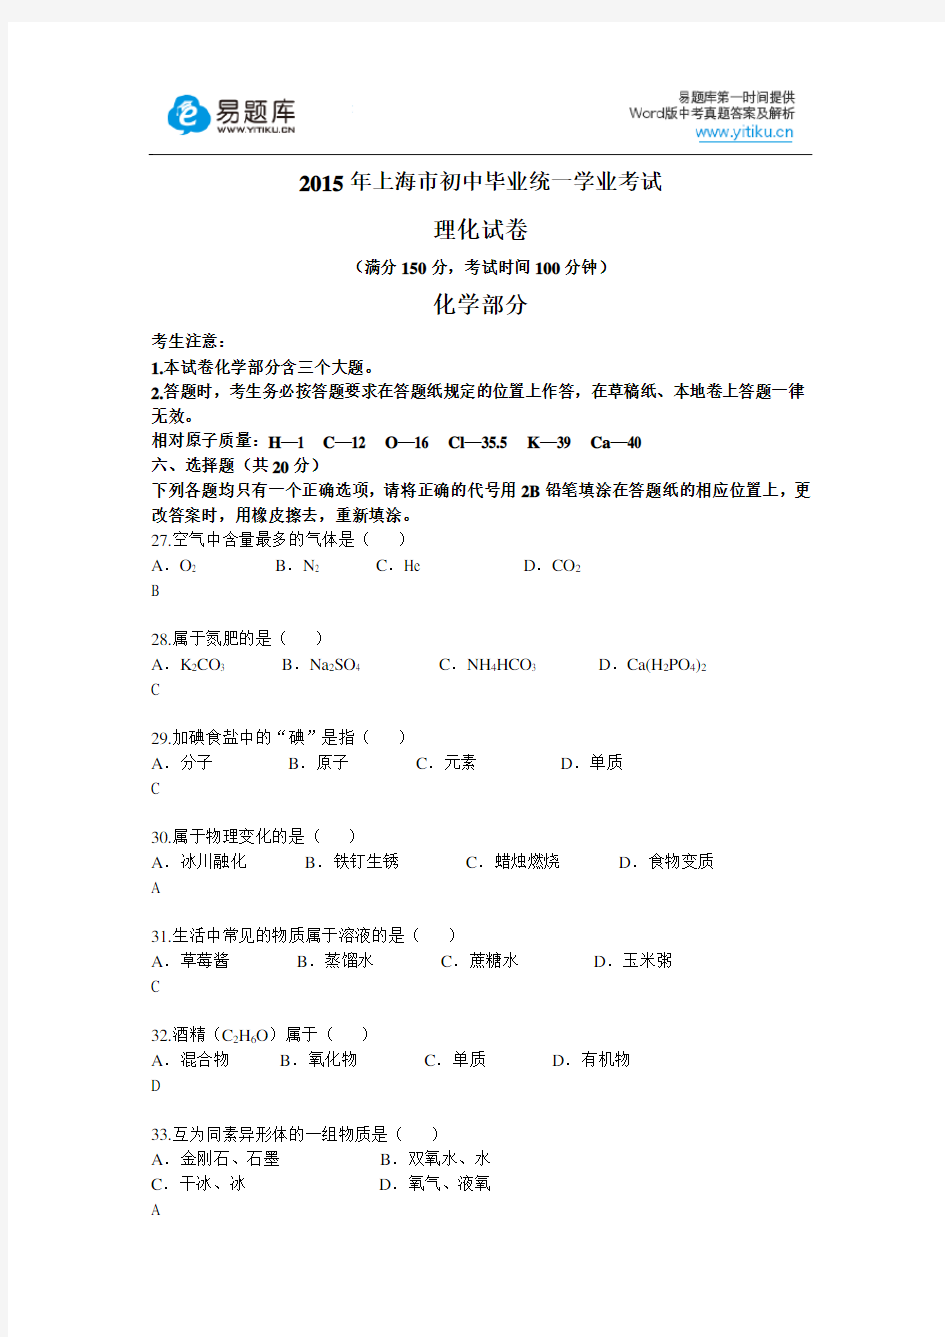 2015年上海市初三中考真题化学试卷(有答案)